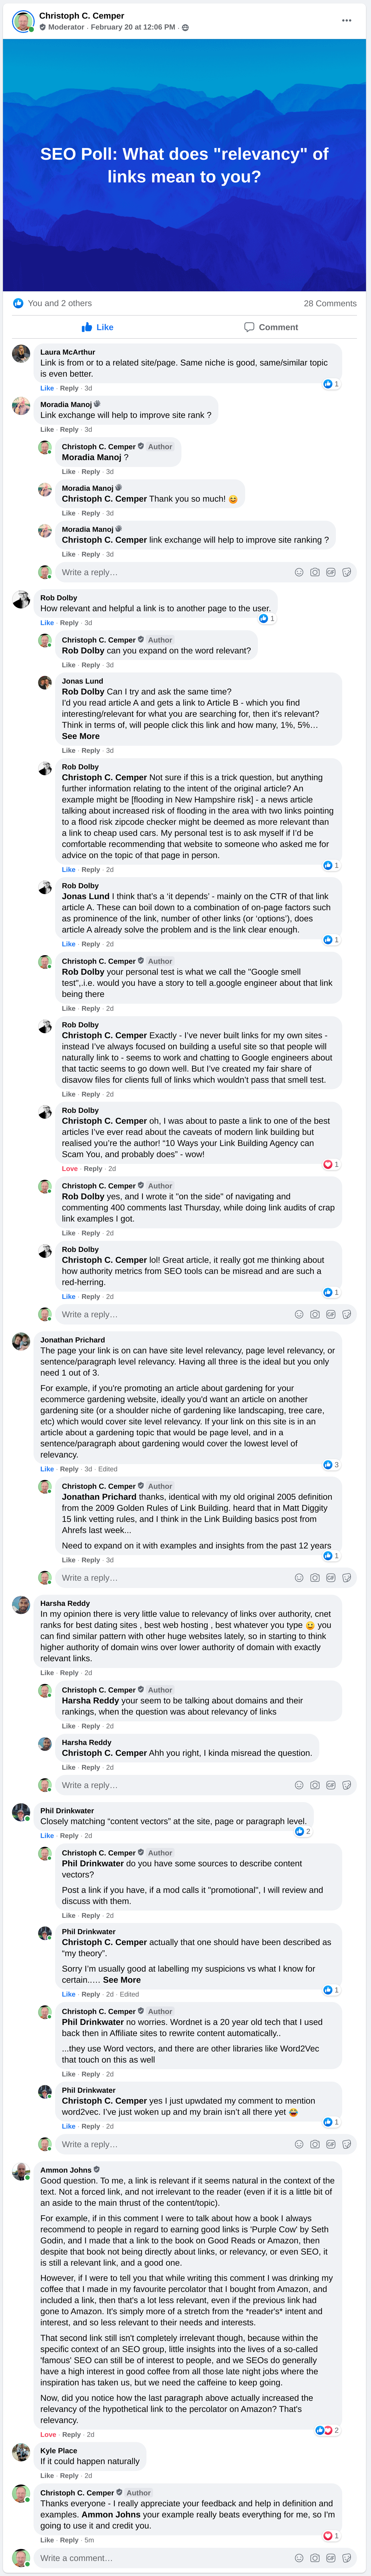 Facebook-Nutzer der White-Hat-SEO-Gruppe als Antwort auf die Frage nach der Relevanz von Links